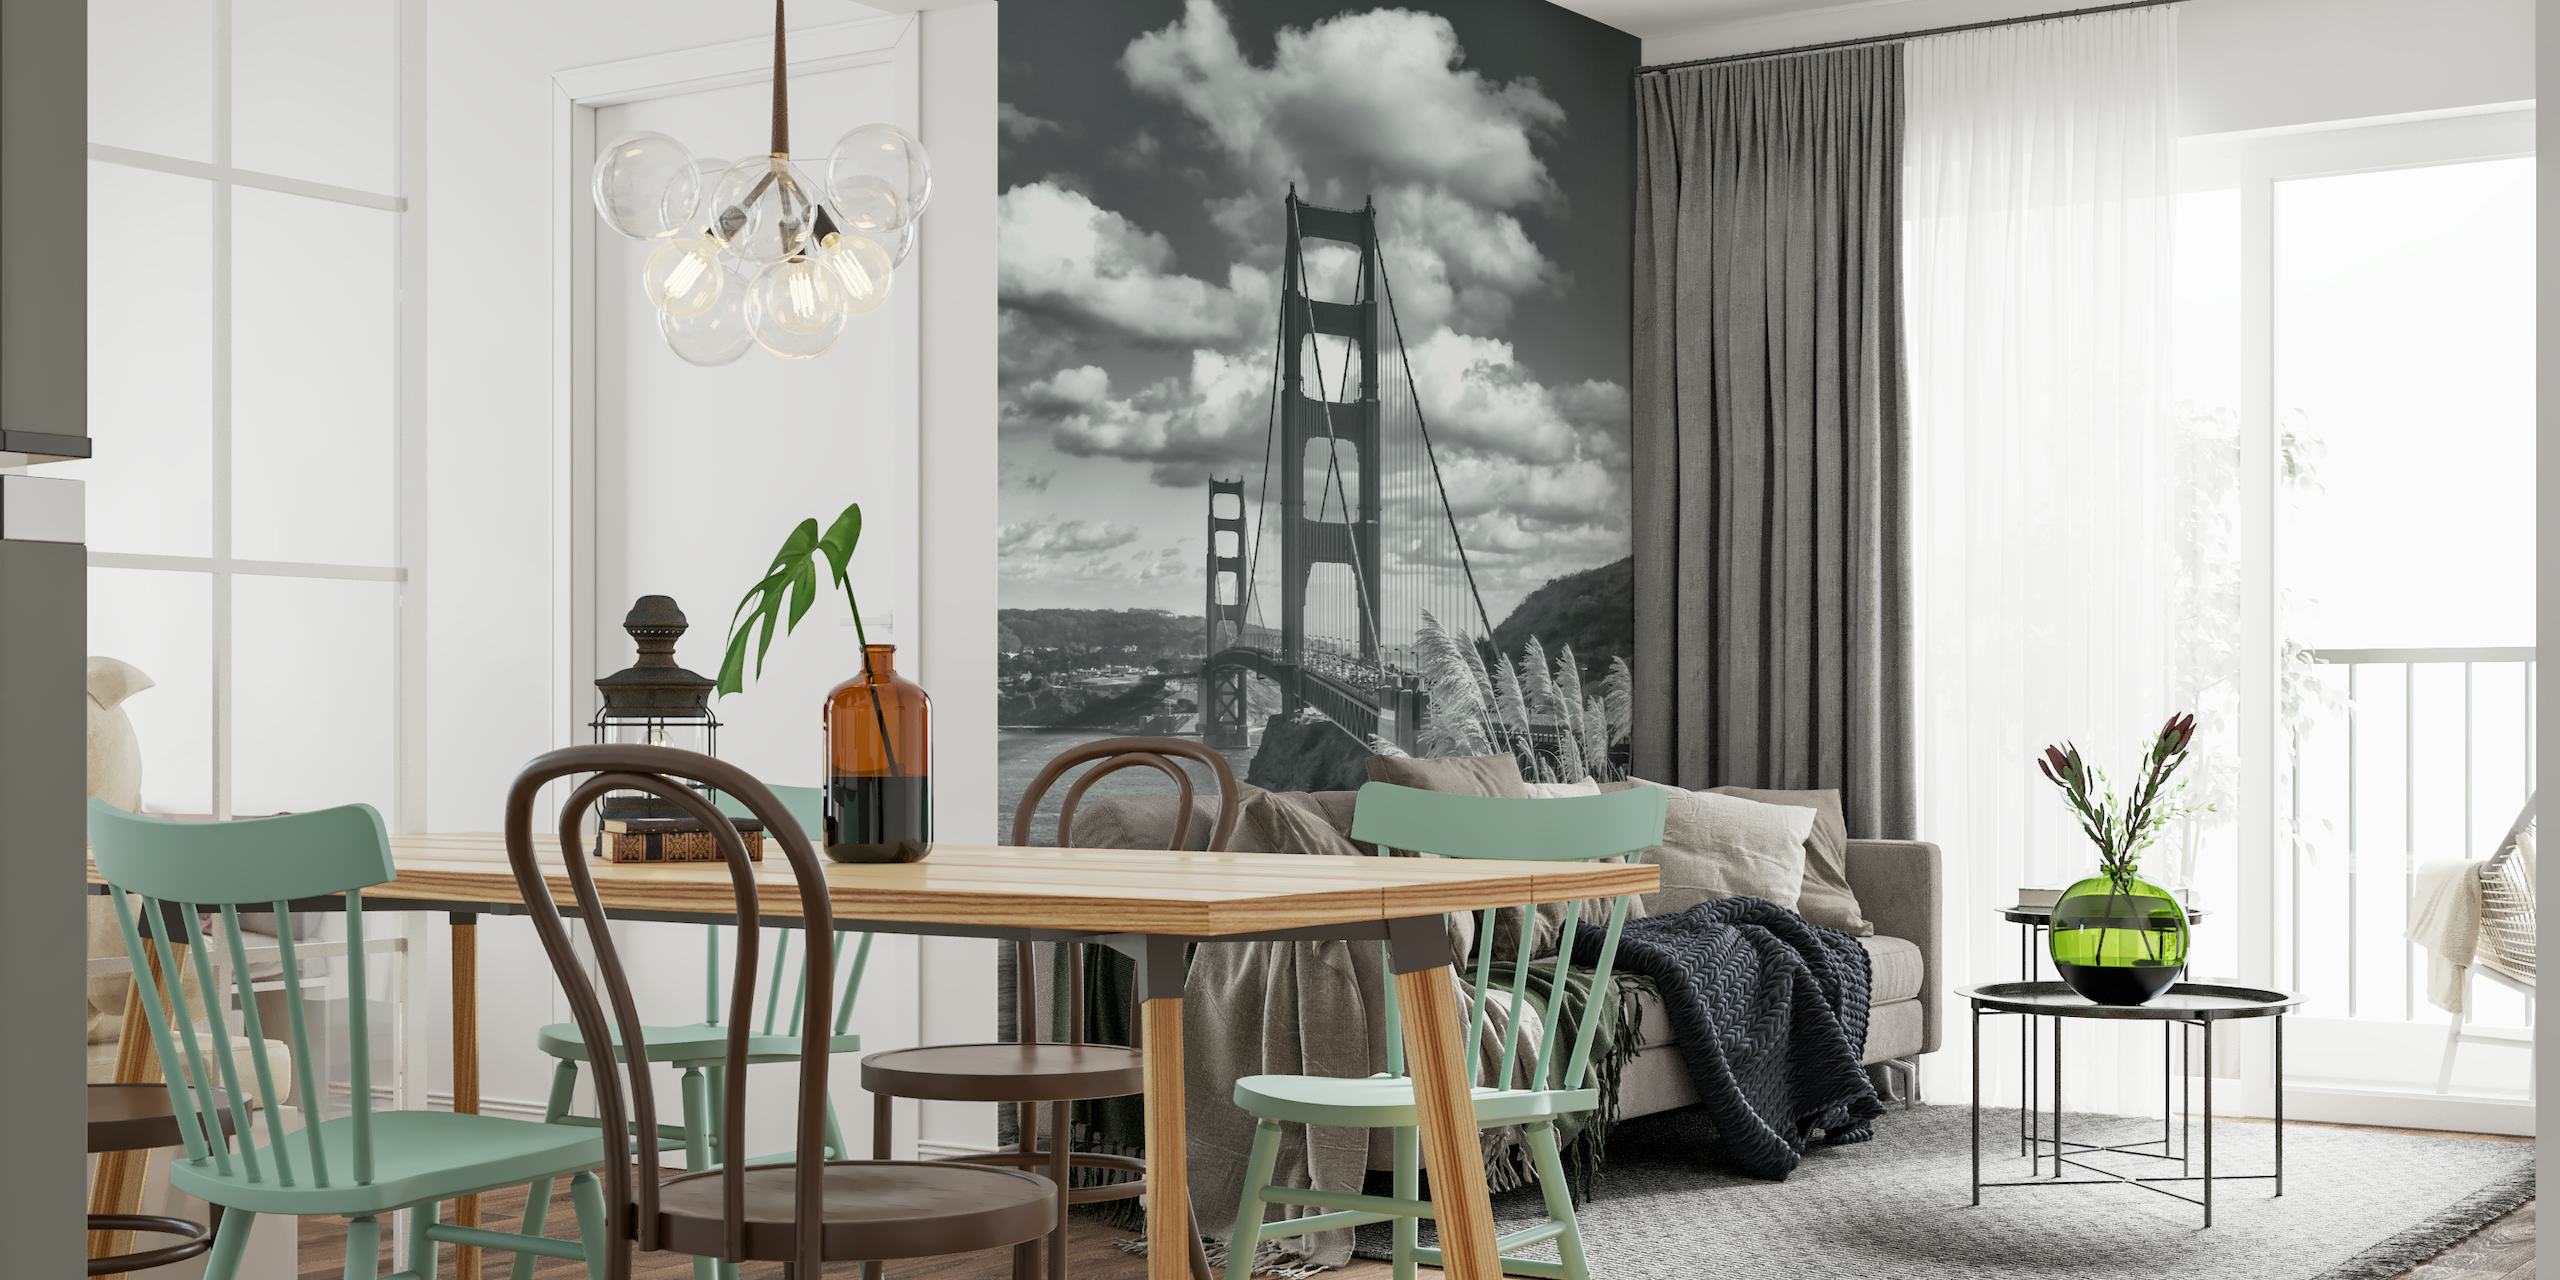 SAN FRANCISCO Monochrome Golden Gate Bridge wallpaper